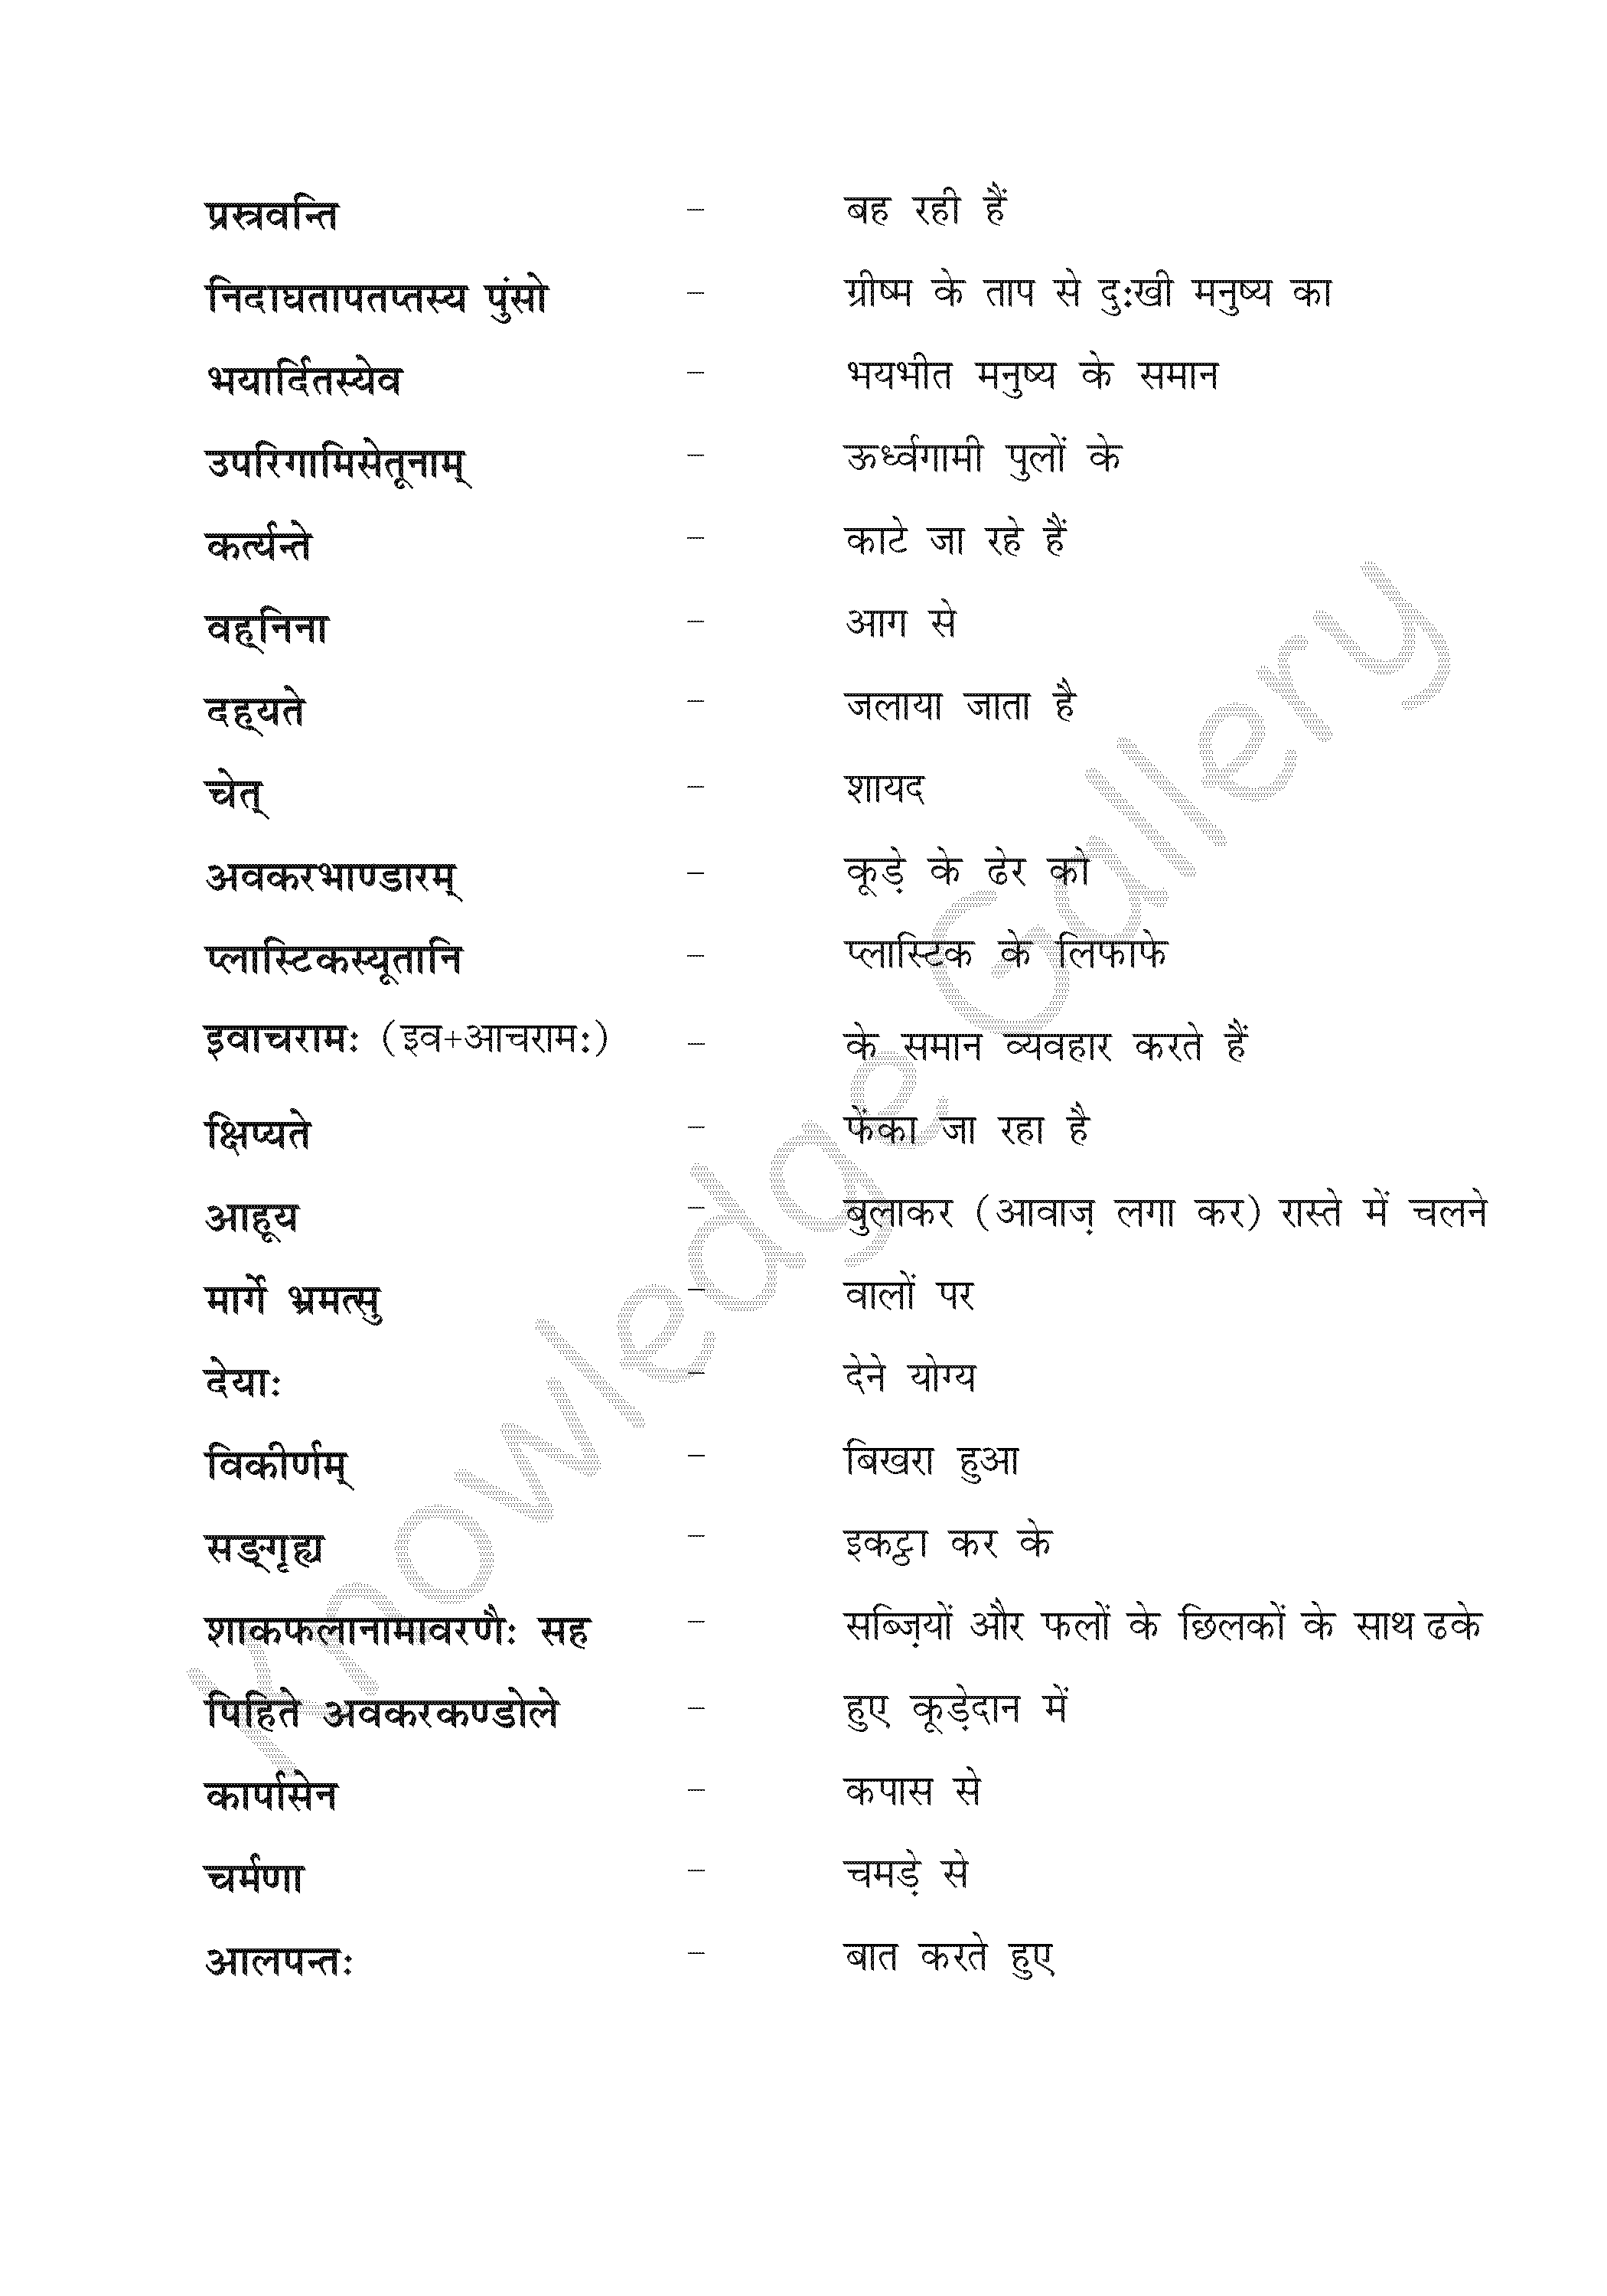 NCERT Solution For Class 8 Sanskrit Chapter 12 part 6